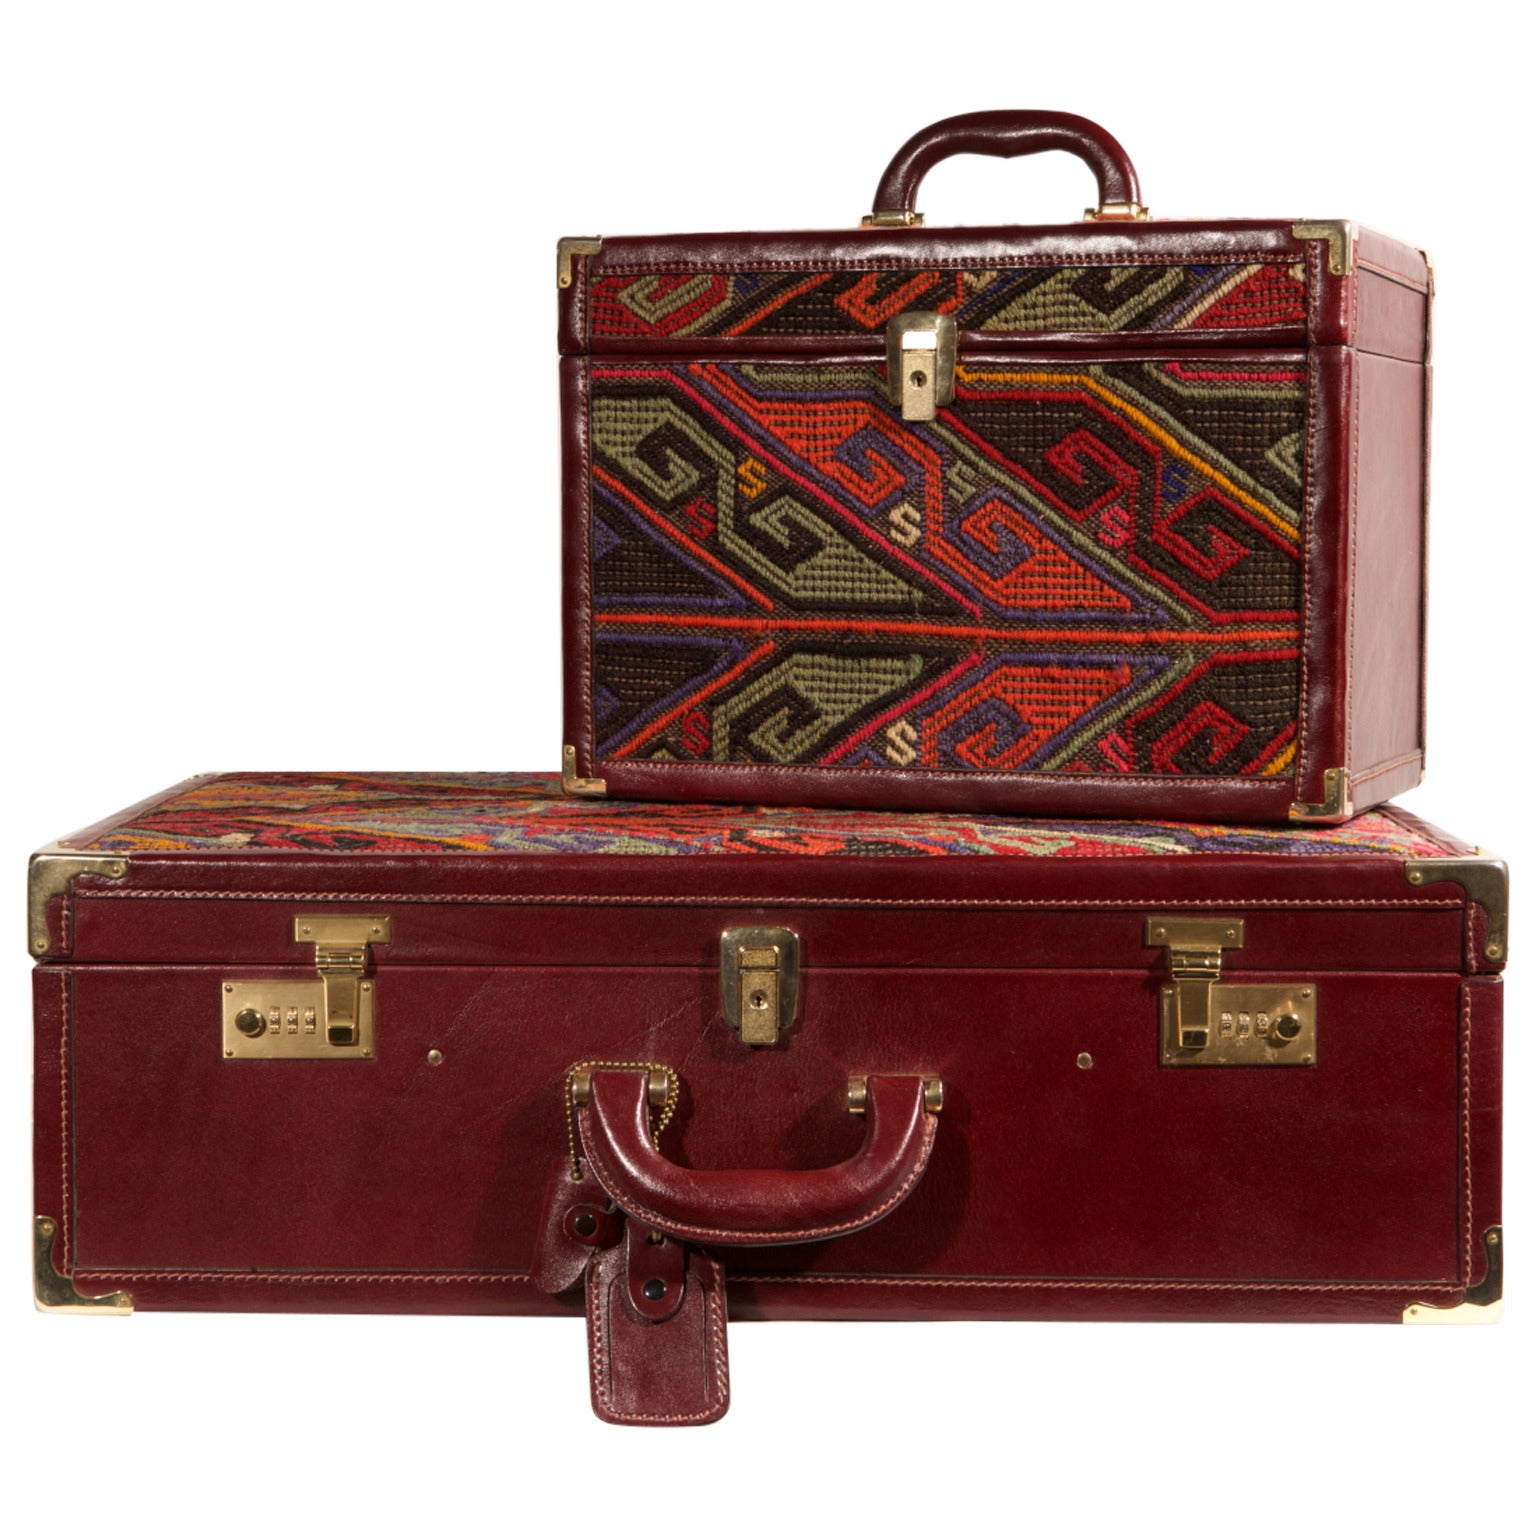 Koffer und Schönheitsgehäuse mit Kelim und Leder, Vuitton-Modell